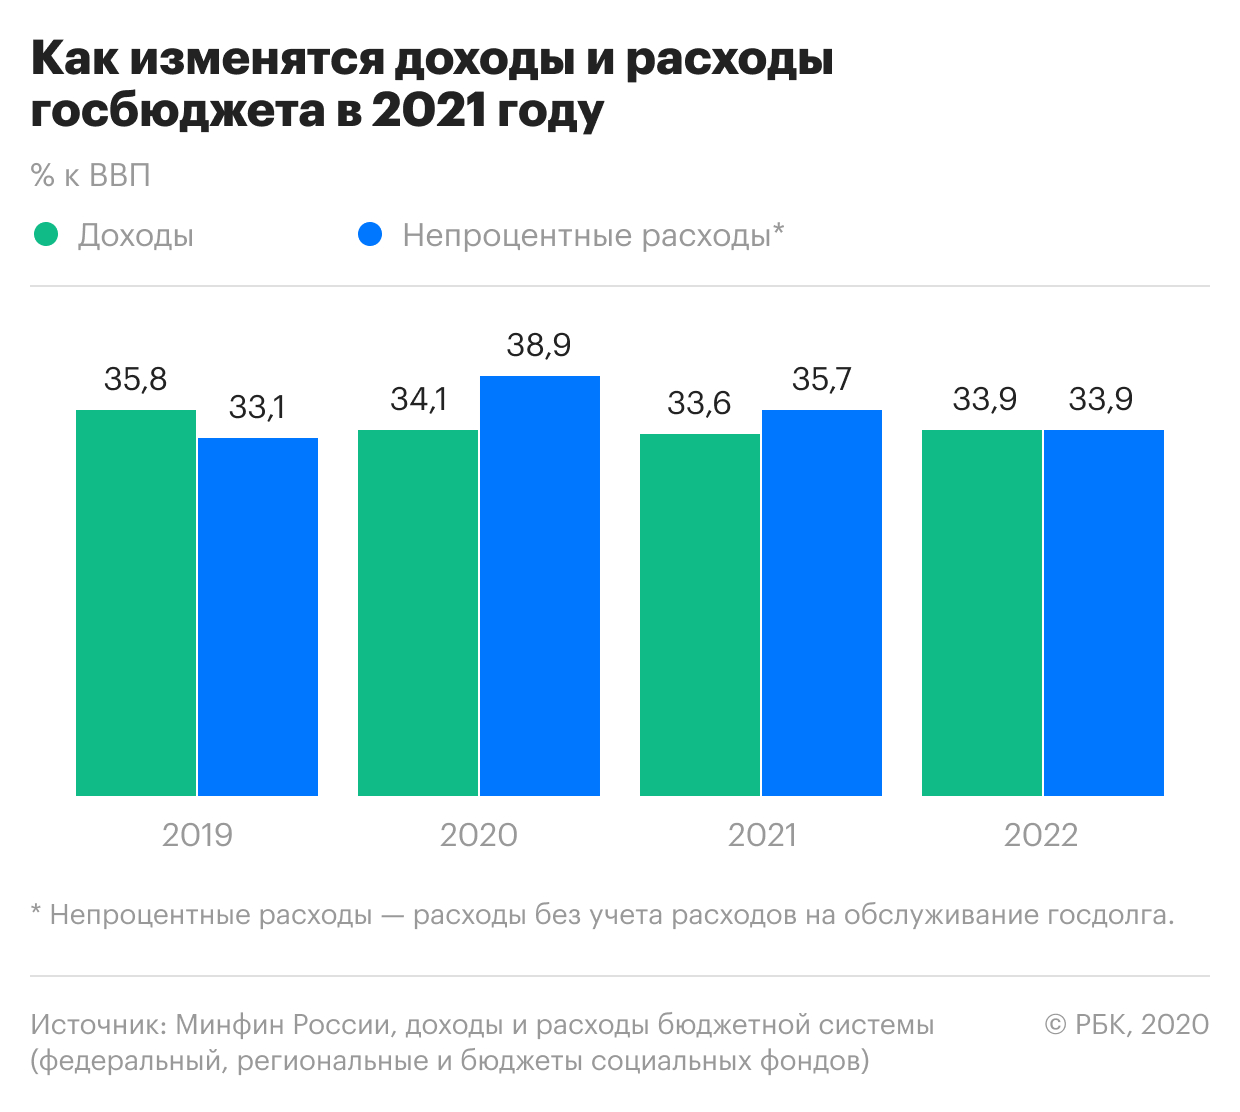 Экономика россии 2018